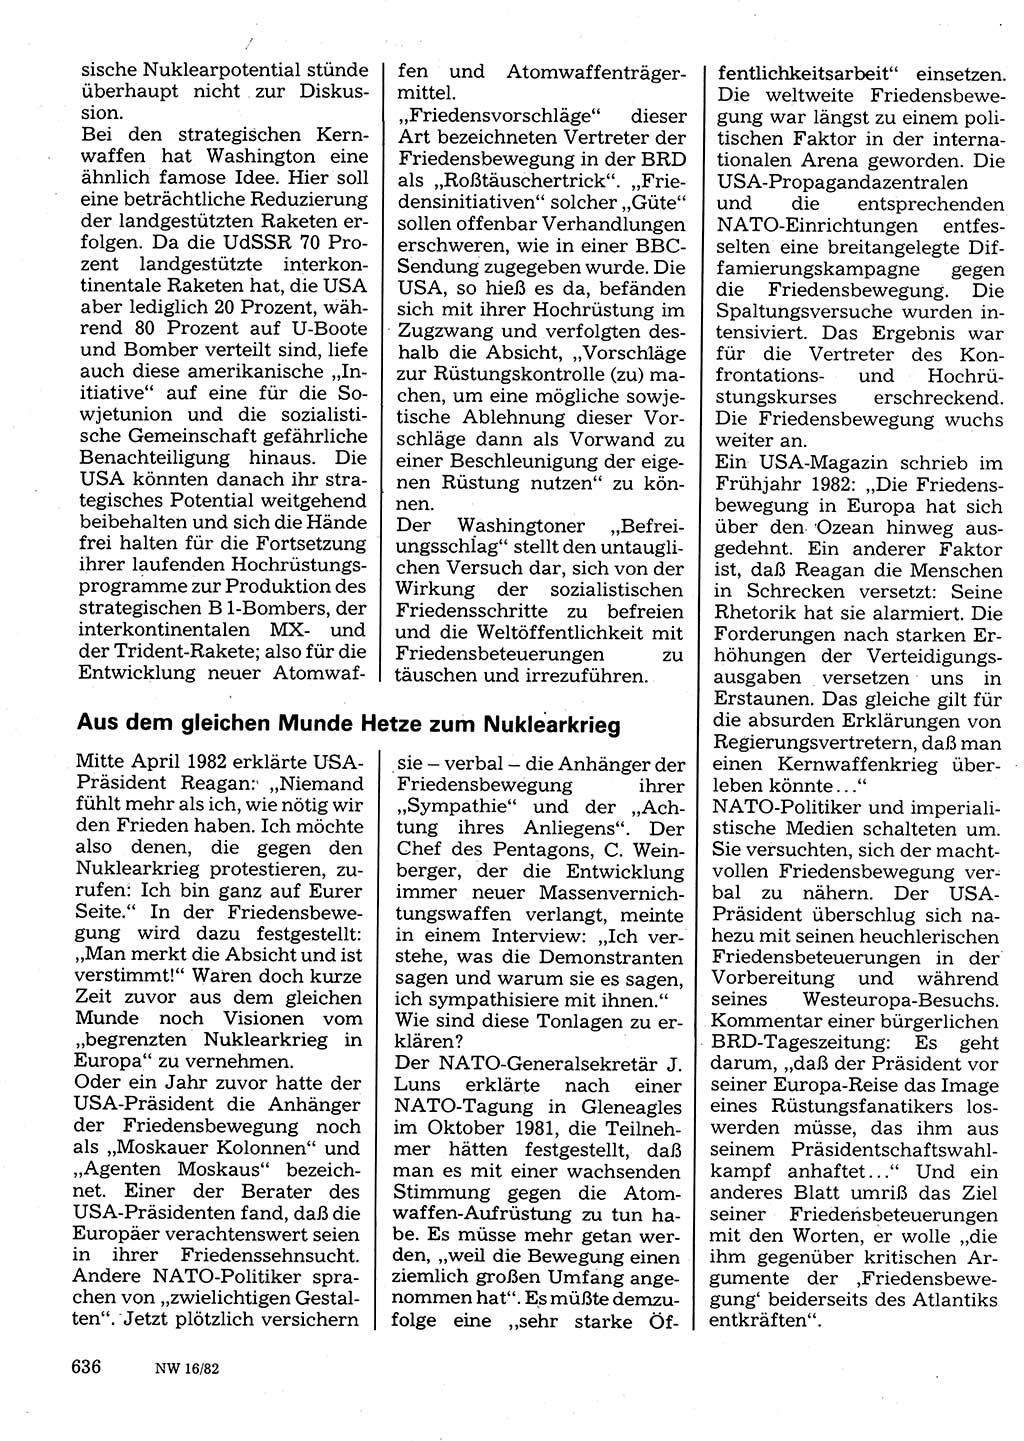 Neuer Weg (NW), Organ des Zentralkomitees (ZK) der SED (Sozialistische Einheitspartei Deutschlands) für Fragen des Parteilebens, 37. Jahrgang [Deutsche Demokratische Republik (DDR)] 1982, Seite 636 (NW ZK SED DDR 1982, S. 636)